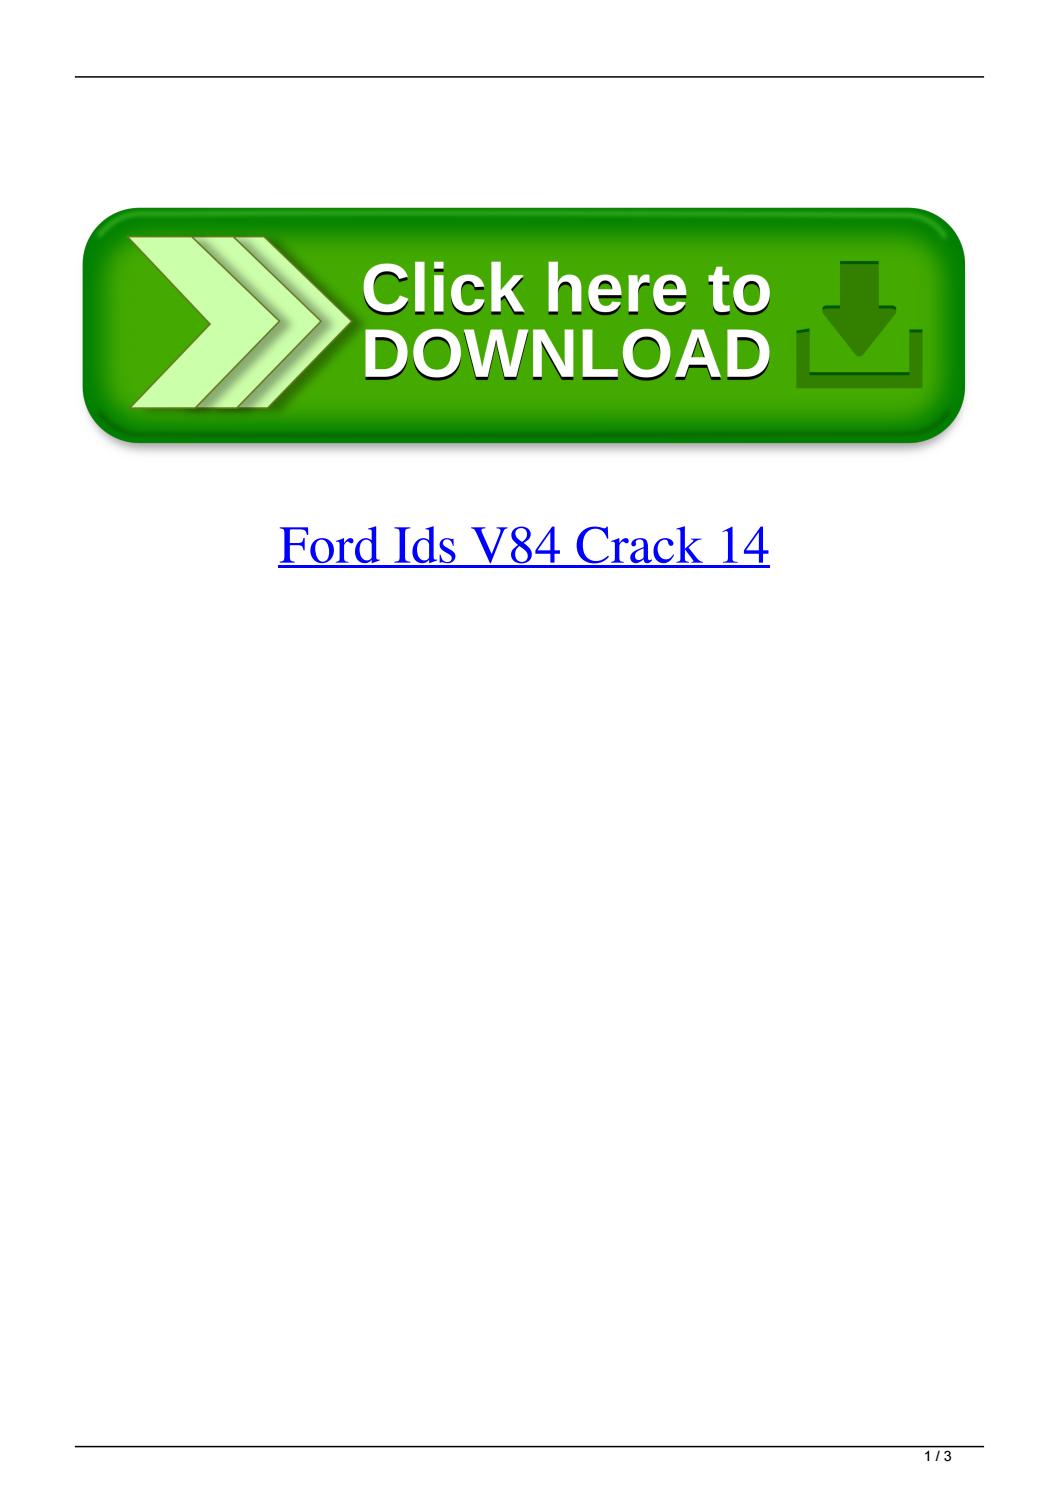 ford ids software license crack v90.04 download